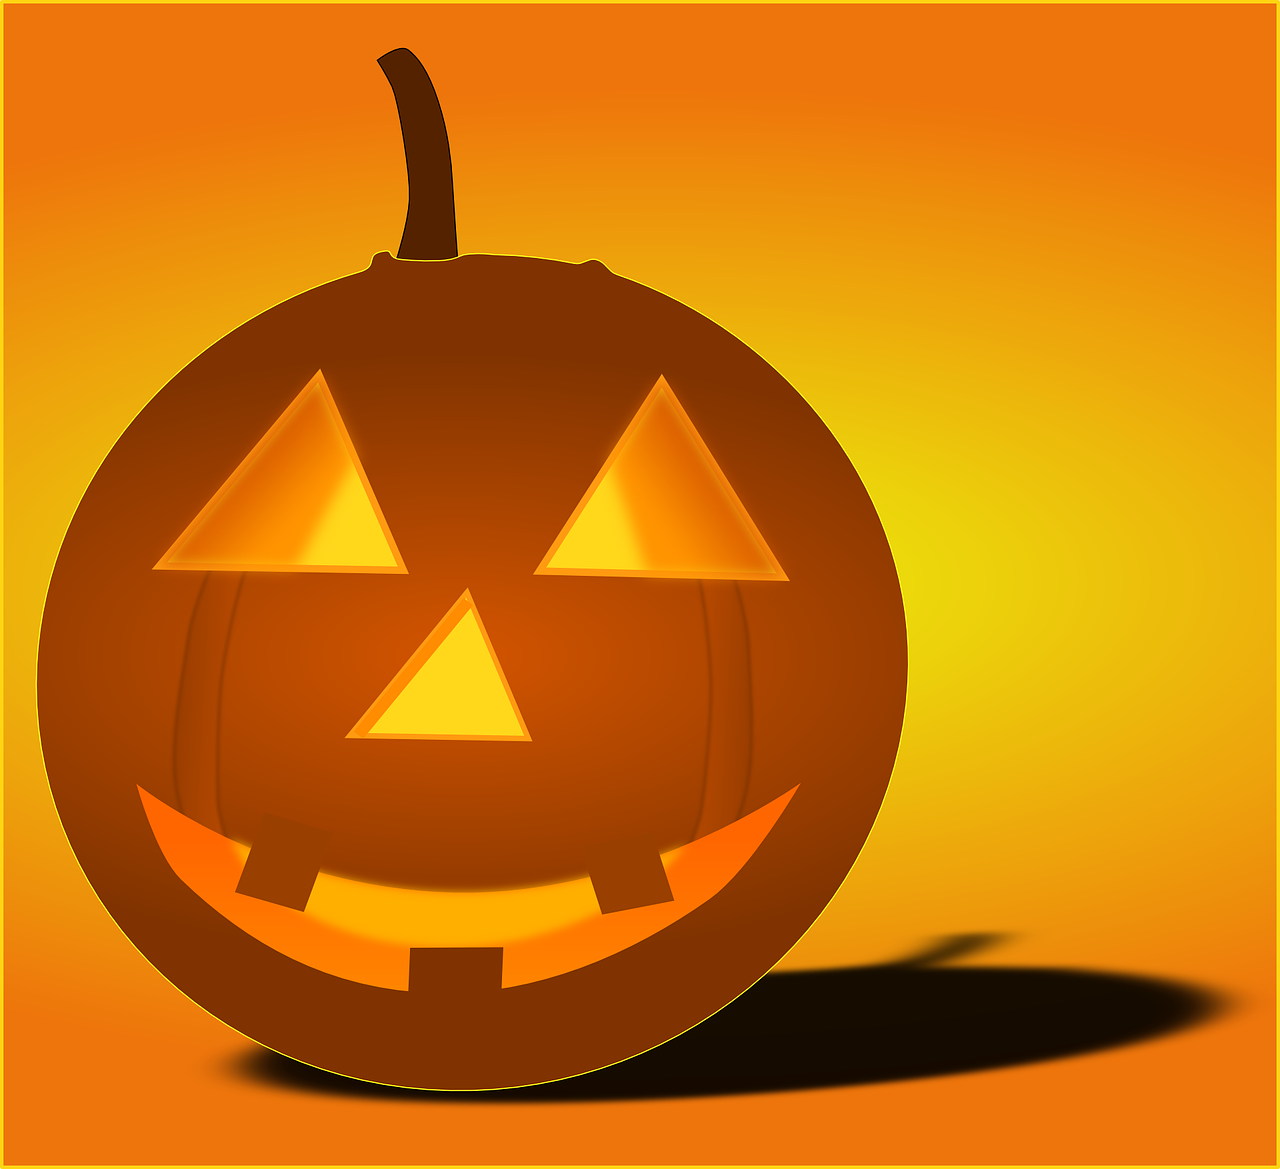 Glass pumpkin featured image